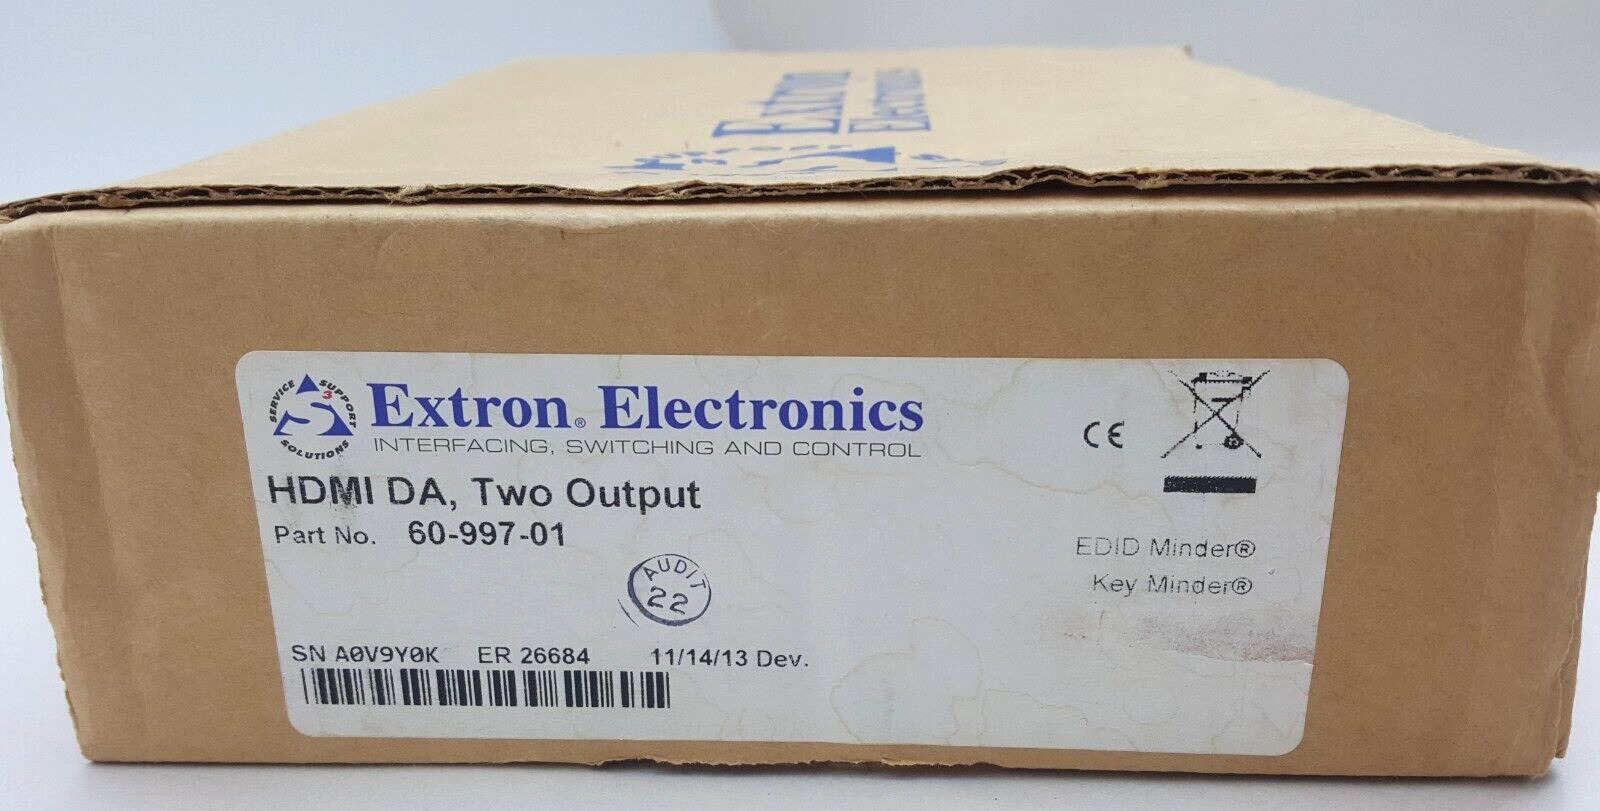 Extron Electronics HDMI DA, Two Output 60-997-01